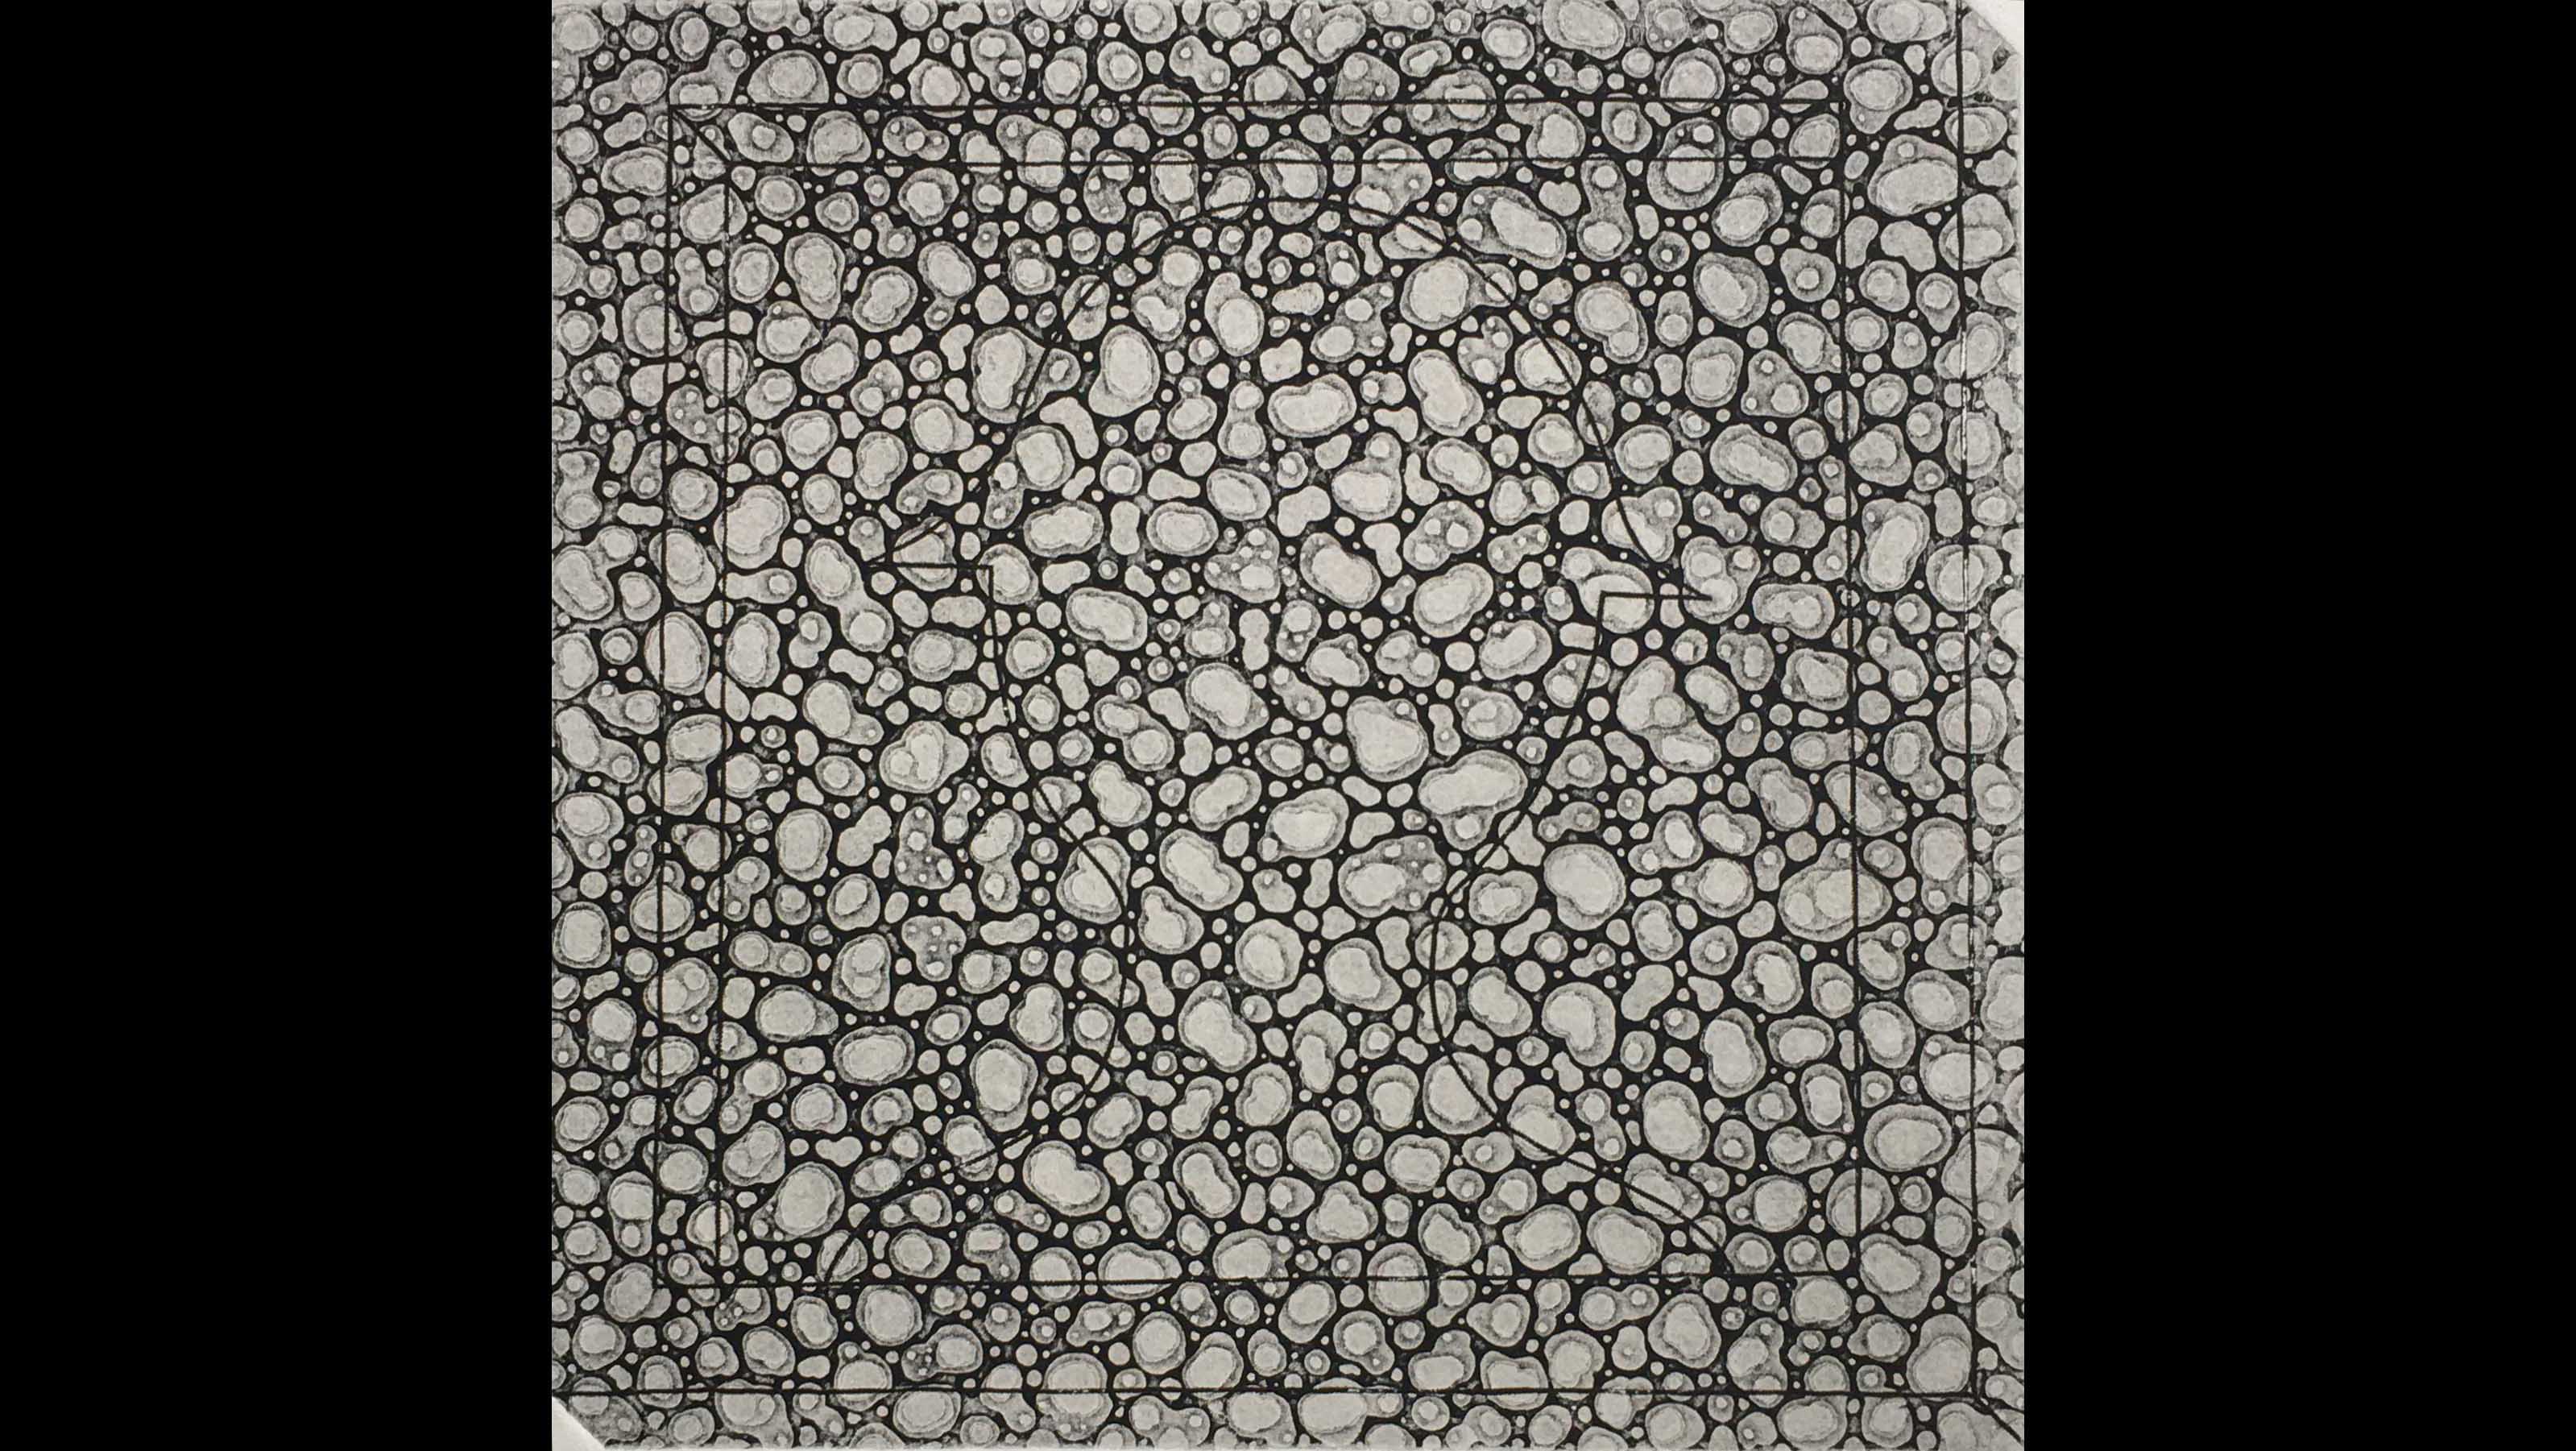 Altan Gürman, Untitled, 1975, etching, 51x35 cm.